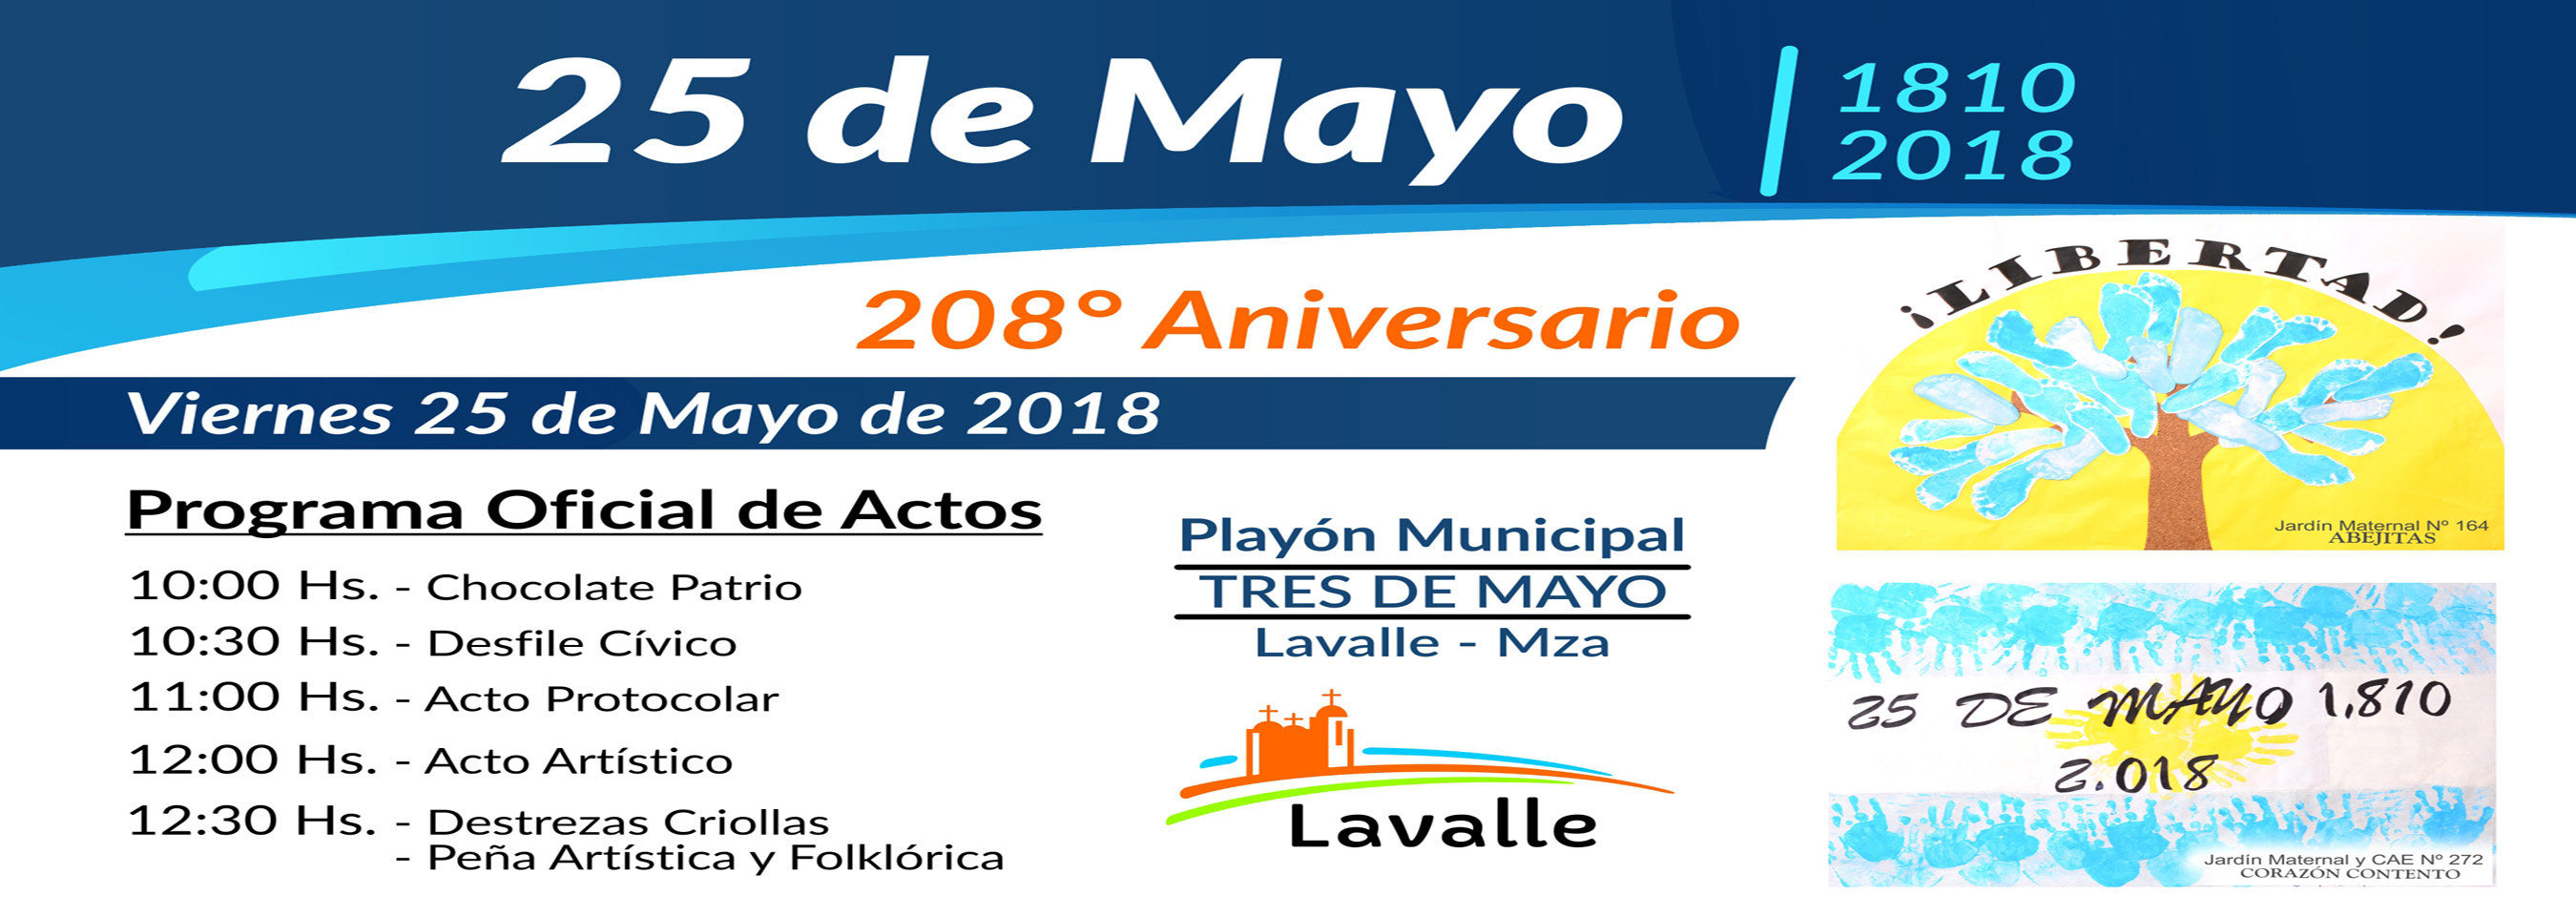 Lavalle festeja el 25 de mayo